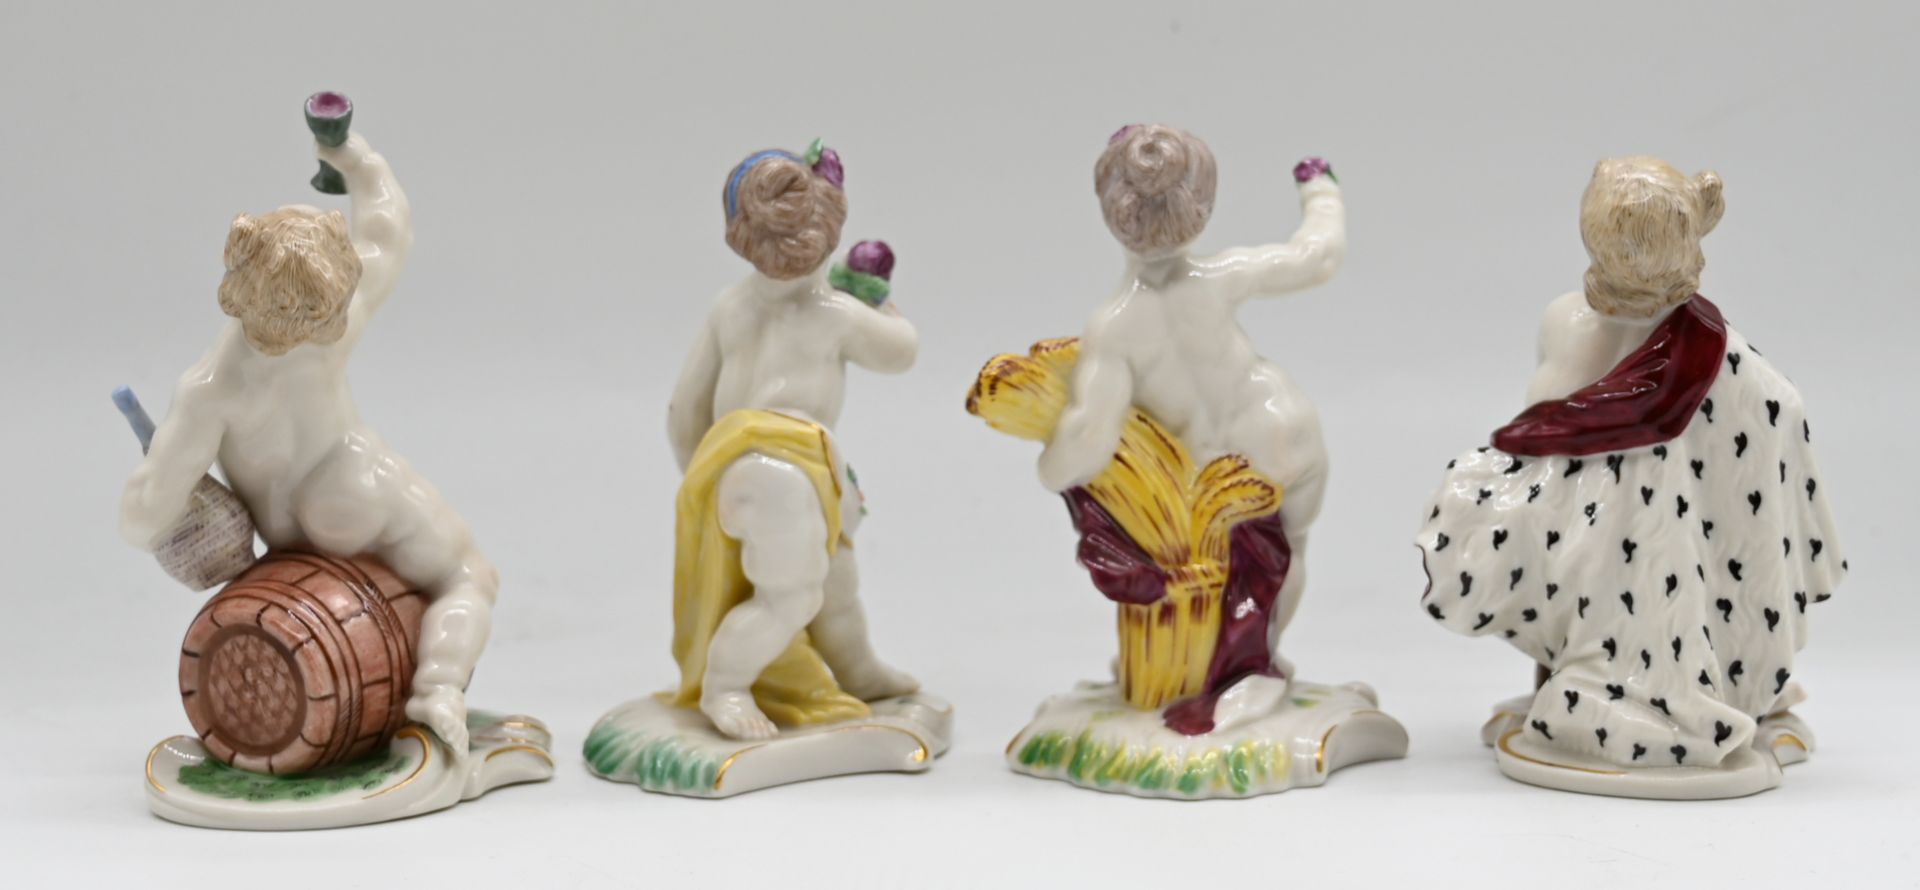 4 Figuren Porzellan NYMPHENBURG "Die vier Jahreszeiten", polychrome Bemalung, H 11cm, berieben, Asp. - Bild 2 aus 3